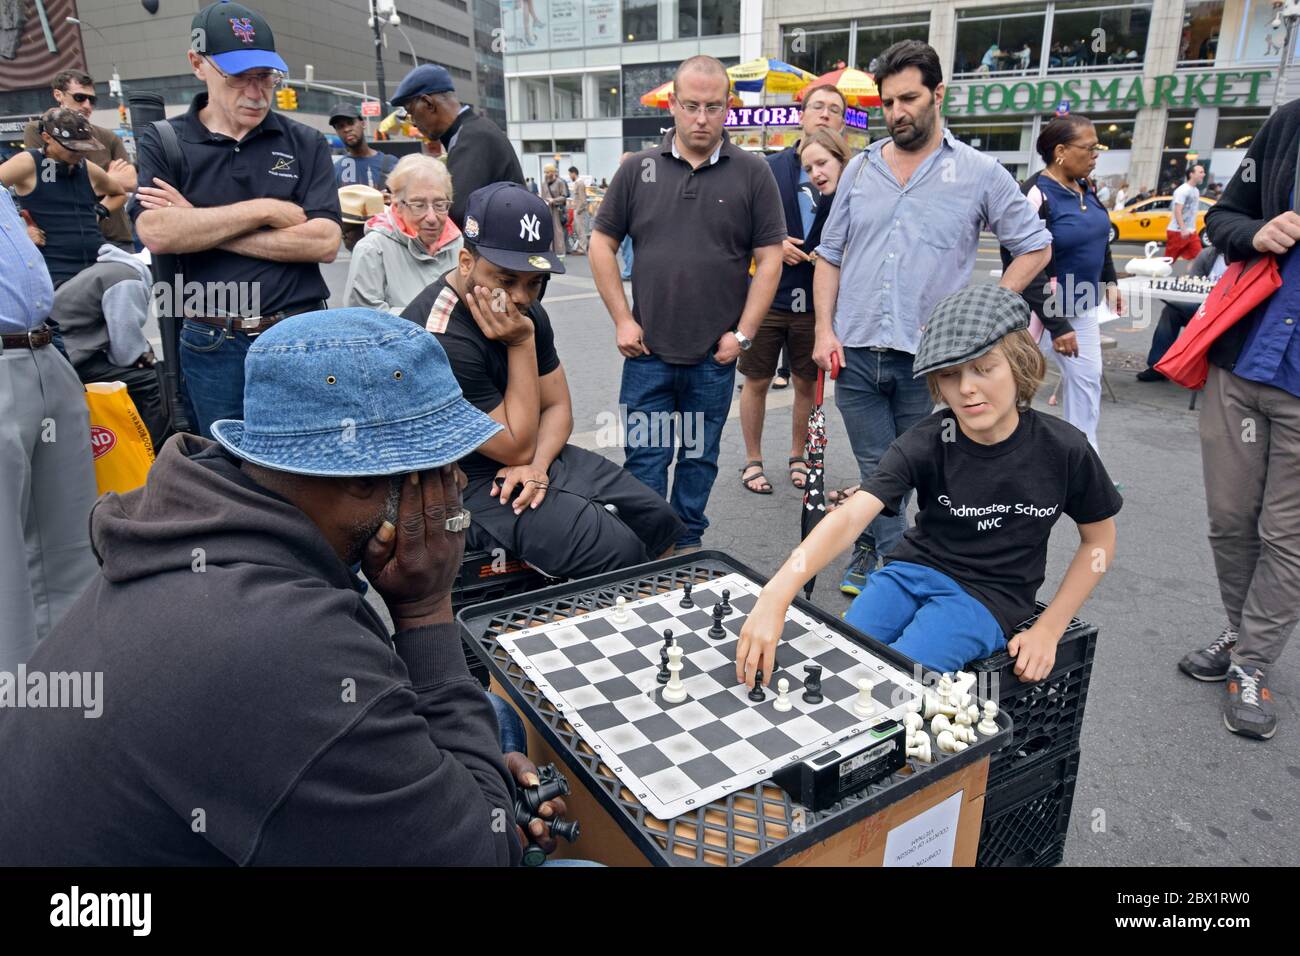 Ein junger Mann zieht eine Menge und spielt Schach gegen einen älteren Mann. Im Union Square Park. Stockfoto